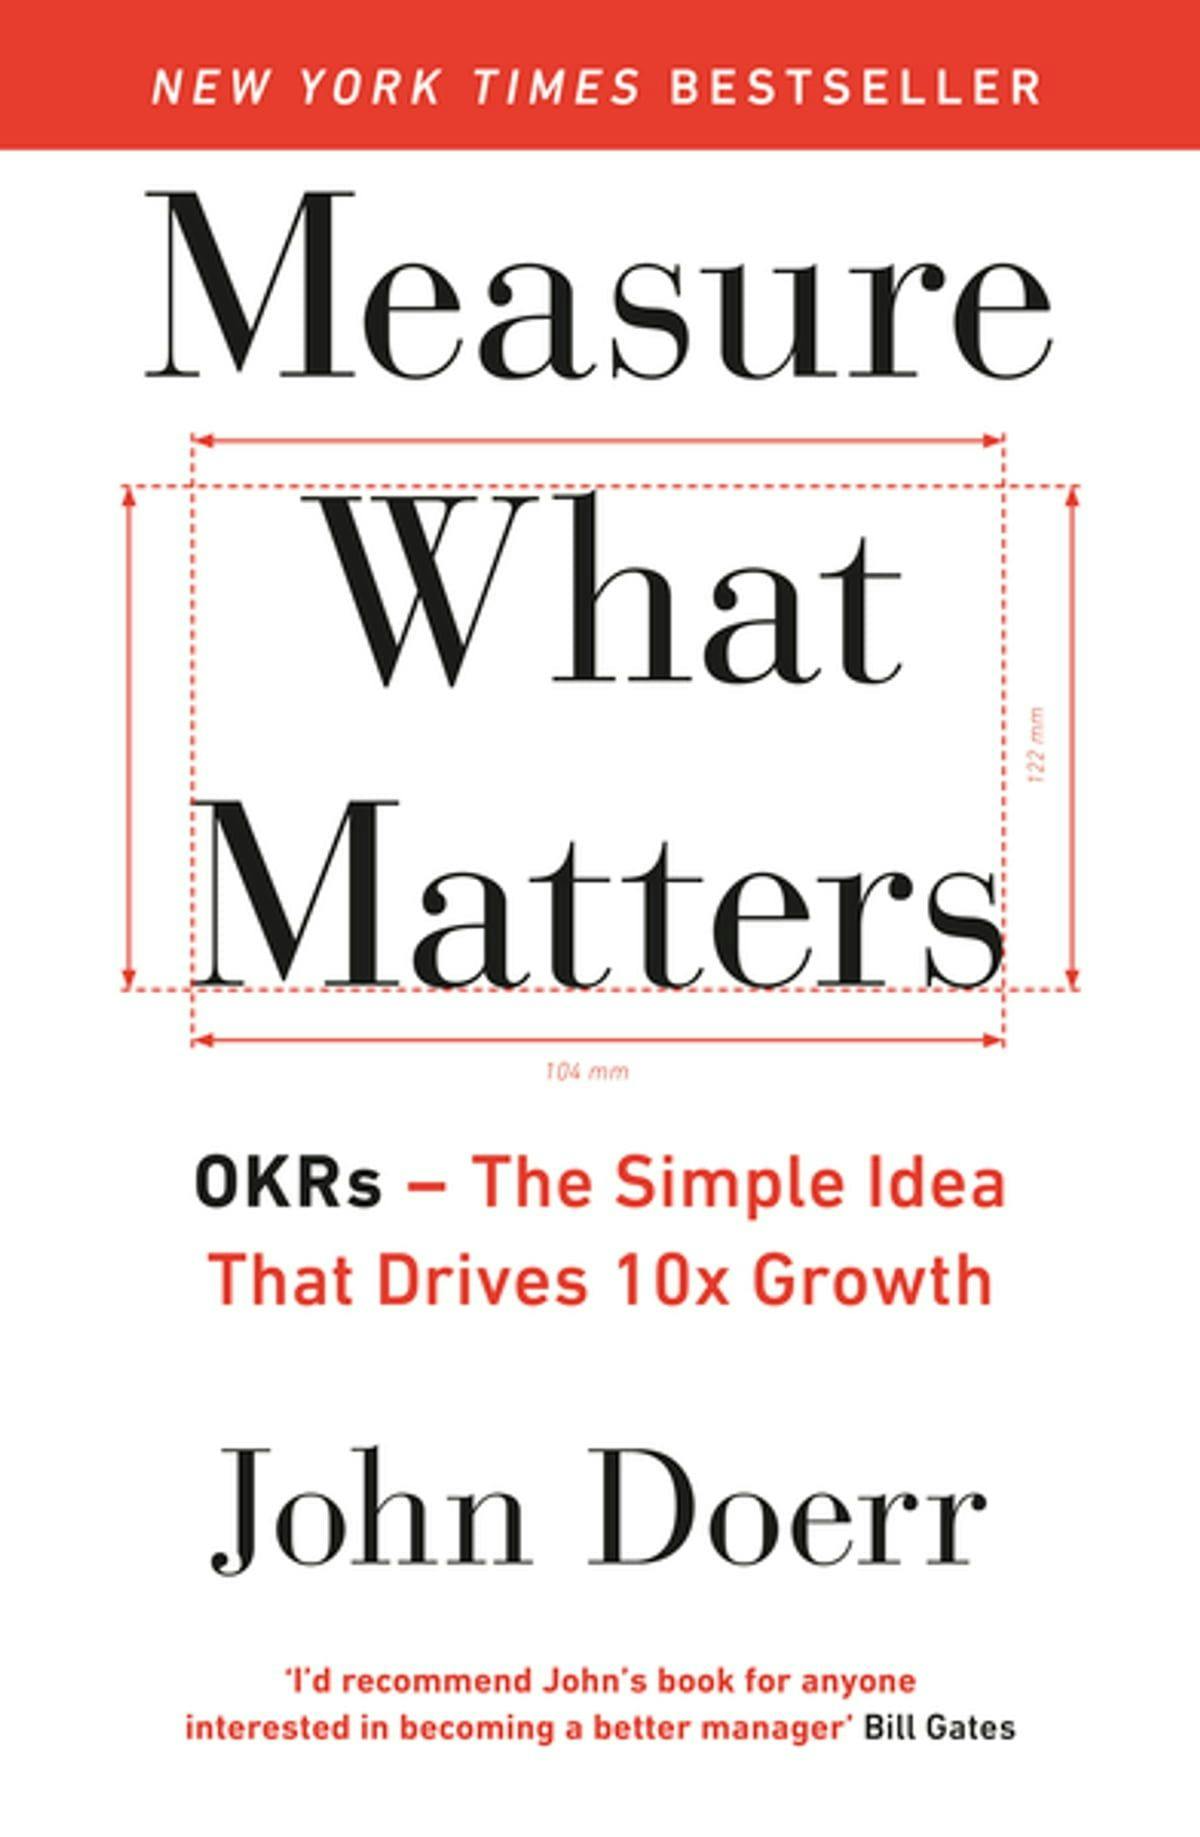 Bilde av boken Measure What Matters av John Doerr.